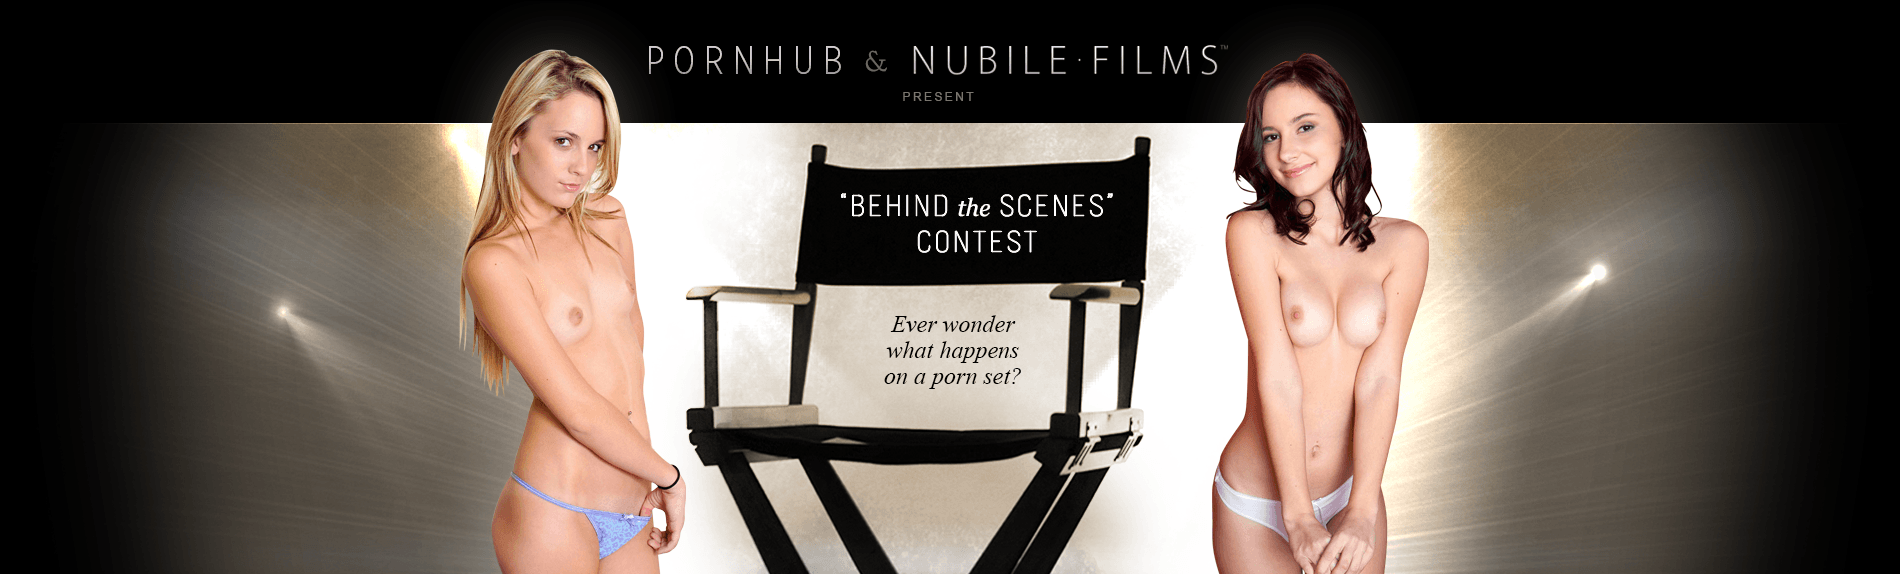 Pornhub & Nubile Films Presentano il concorso Dietro le Quinte